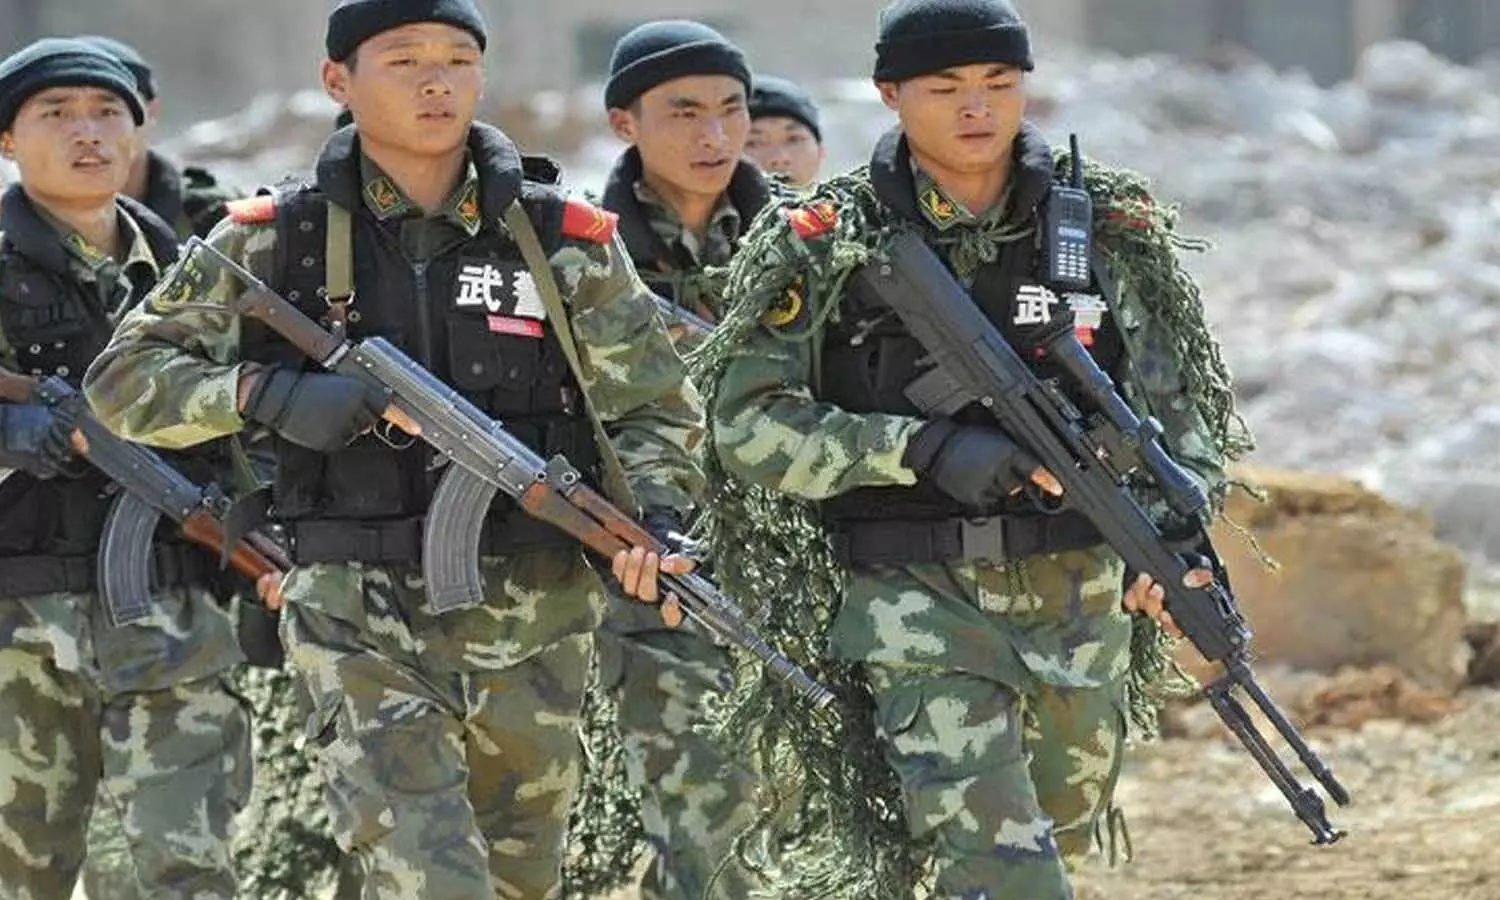 हिमालय की सर्दी से चीनी सैनिक की हालत खराब, अब चीन ने उठाया ये बड़ा कदम